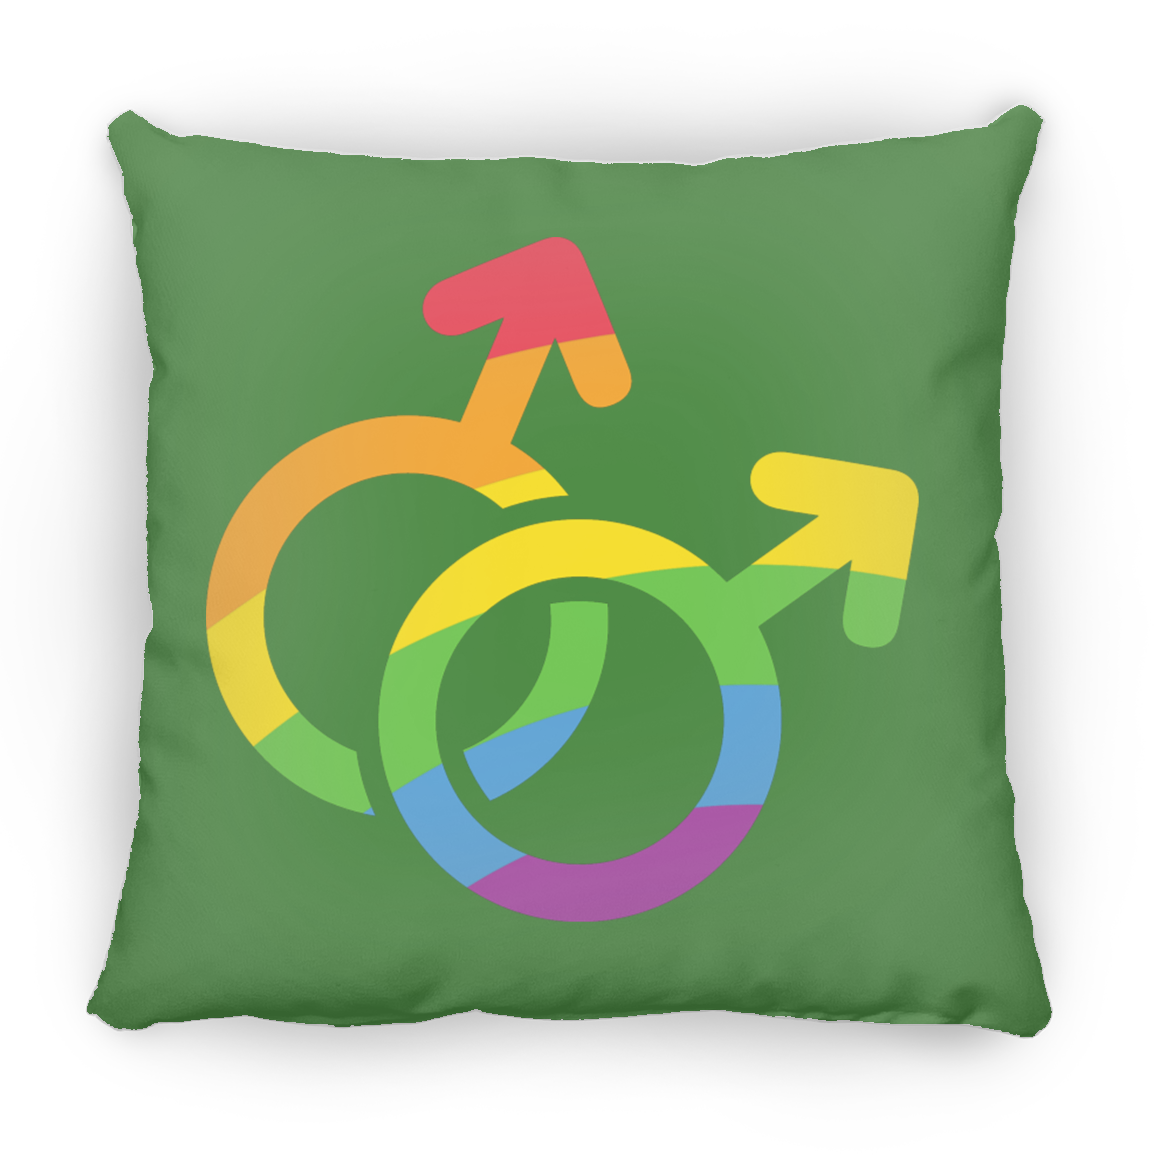 Male Pride Square Pillow